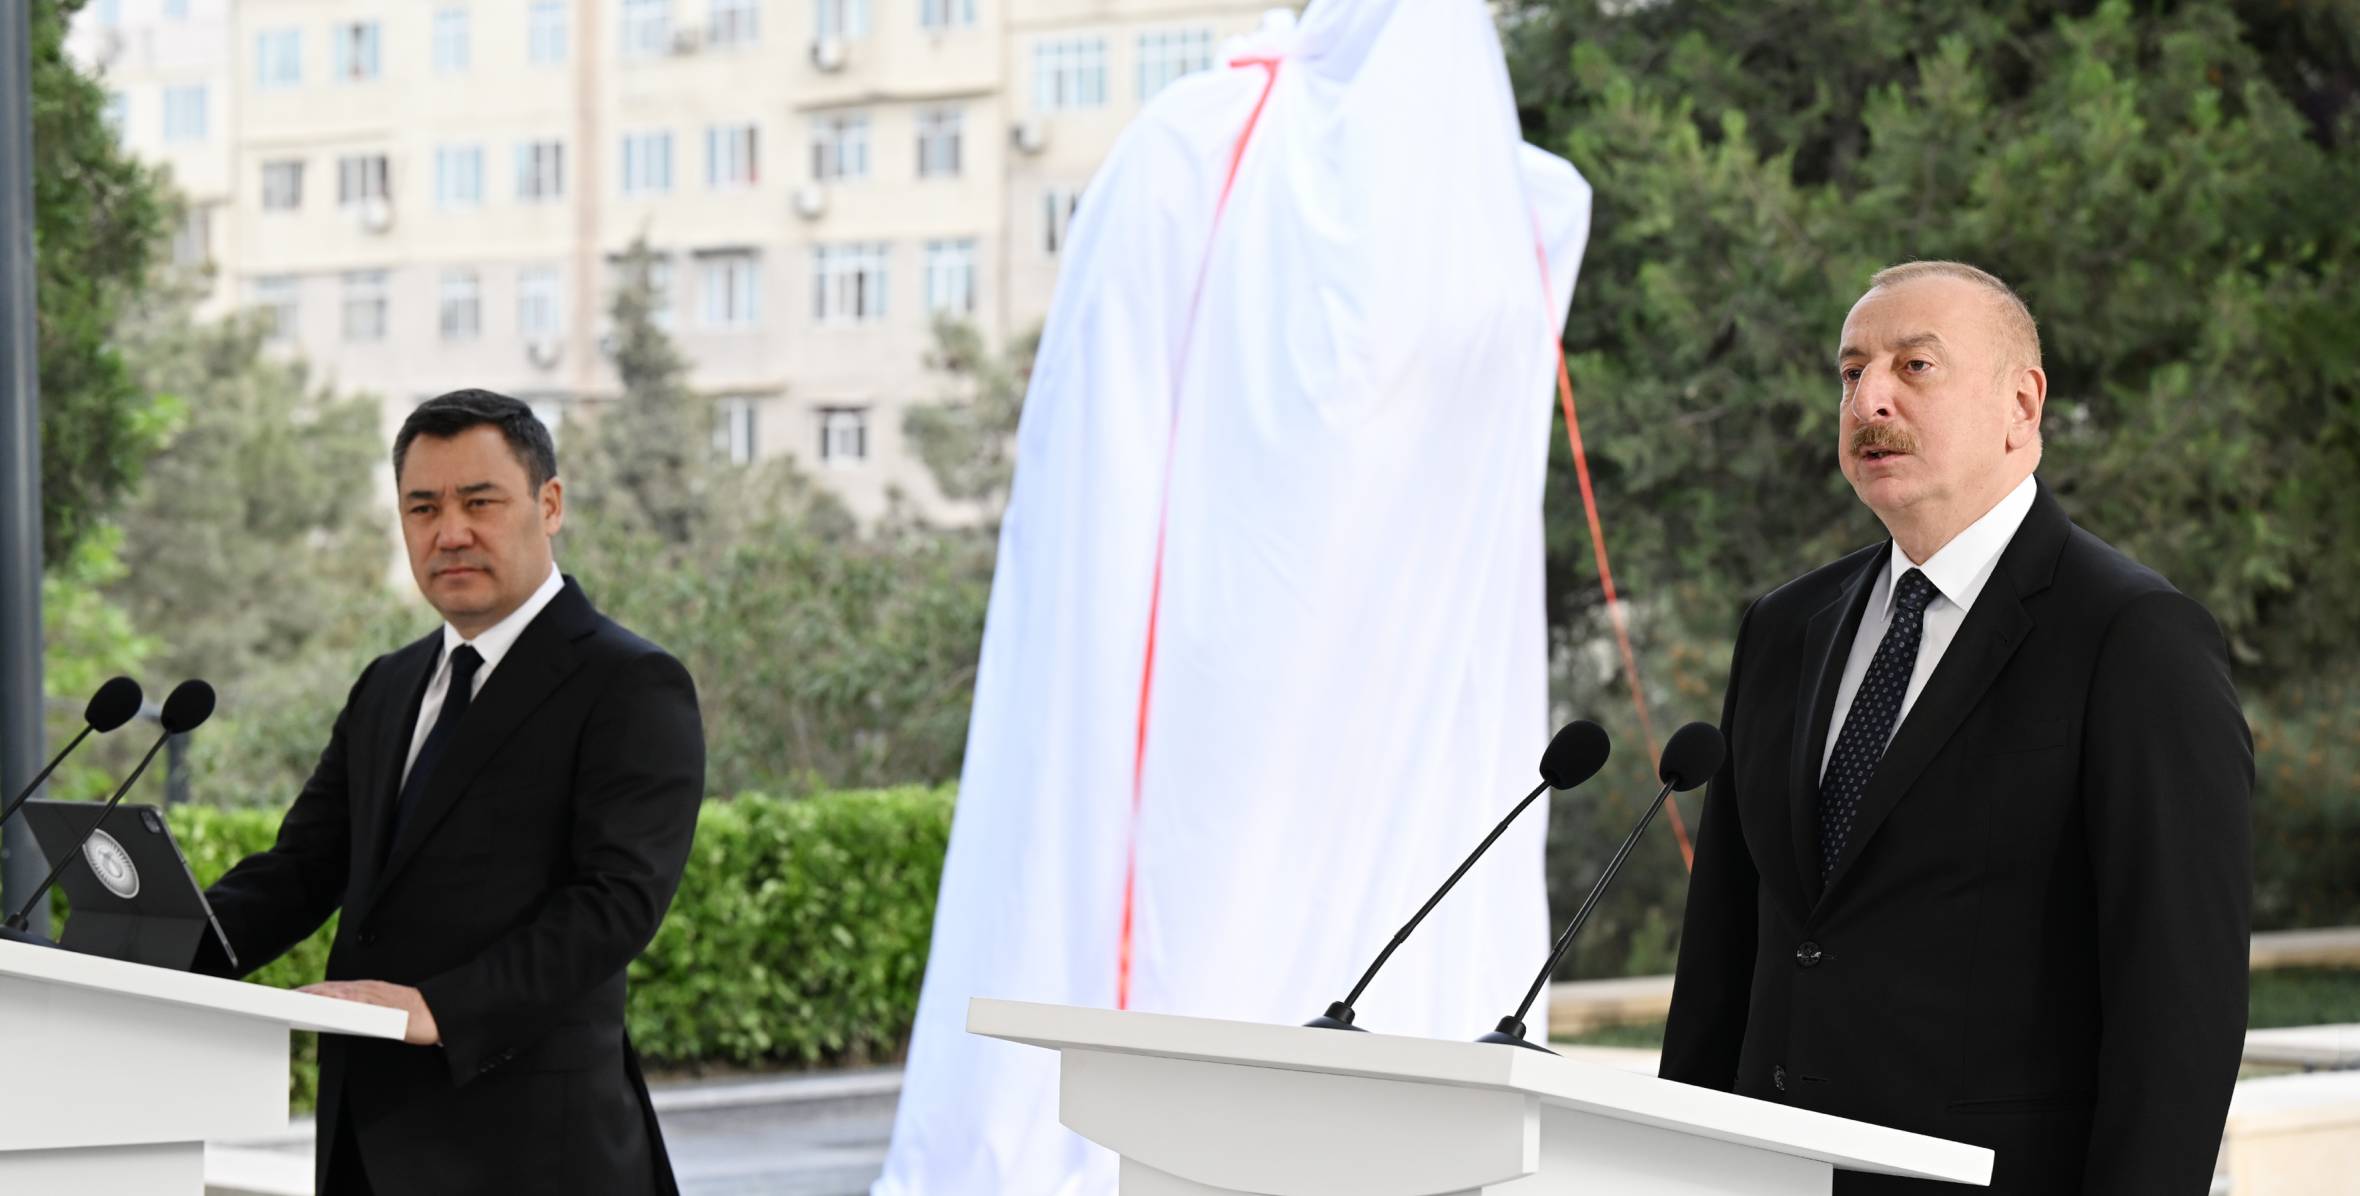 Ilham Aliyev and President Sadyr Zhaparov attended unveiling ceremony of monument to Chingiz Aitmatov in Baku